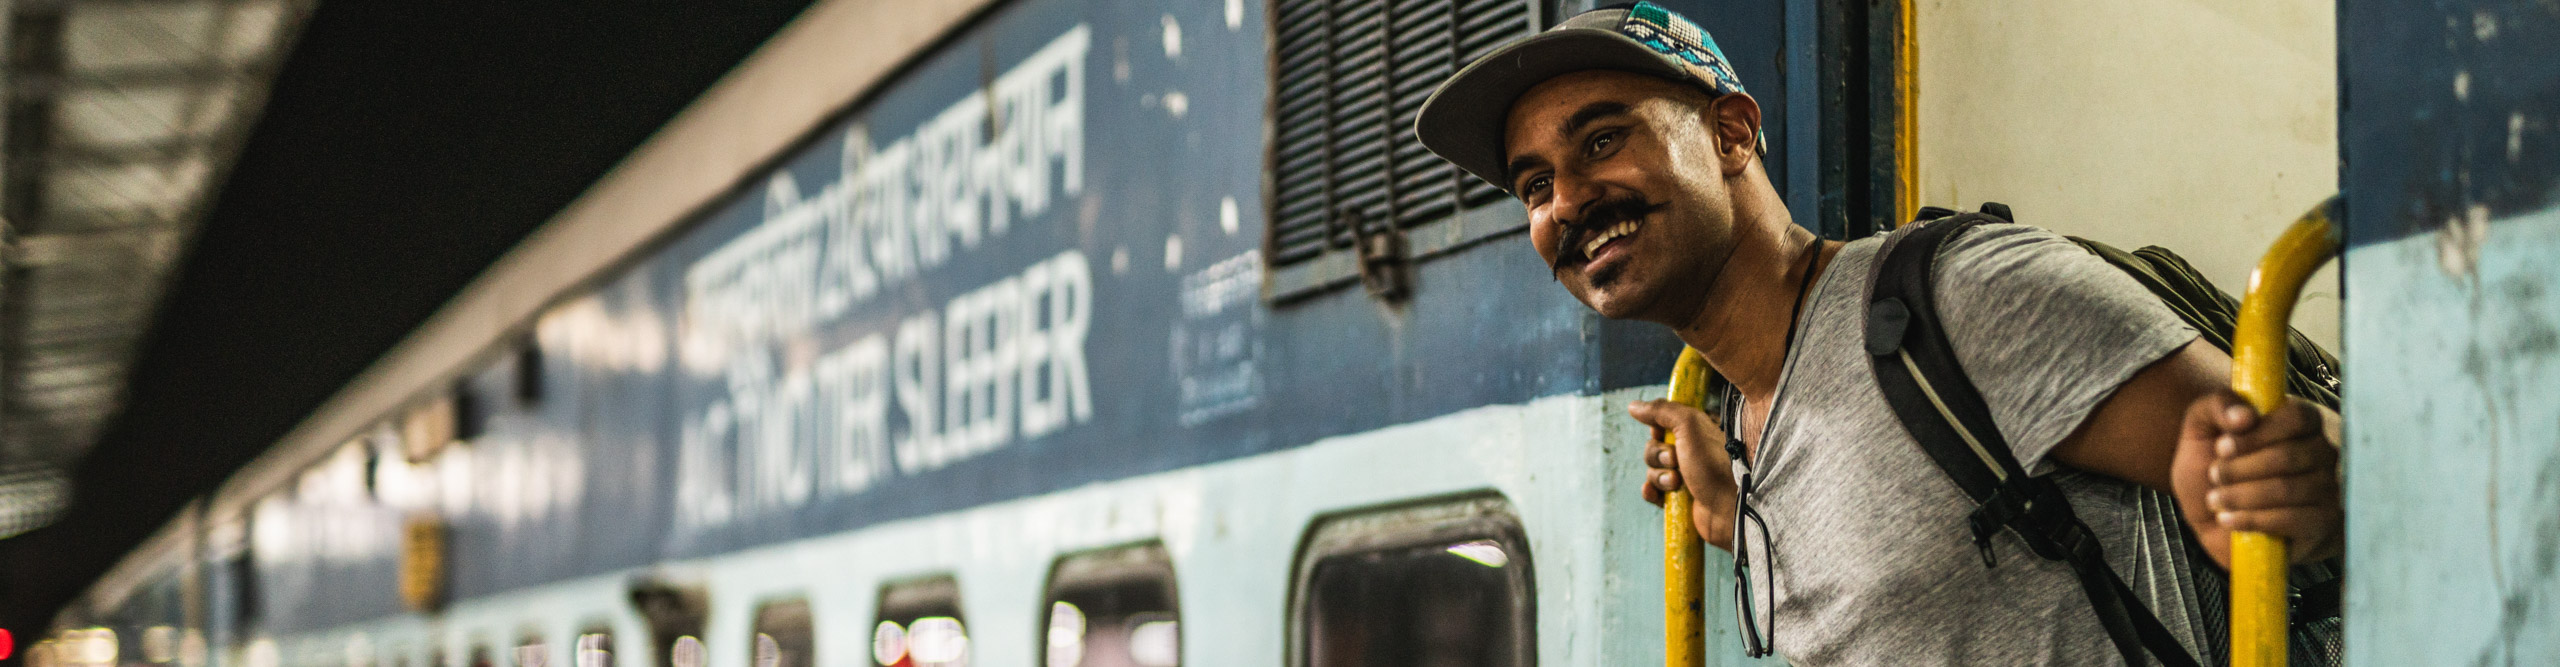 Man standing in doorway of train in India 